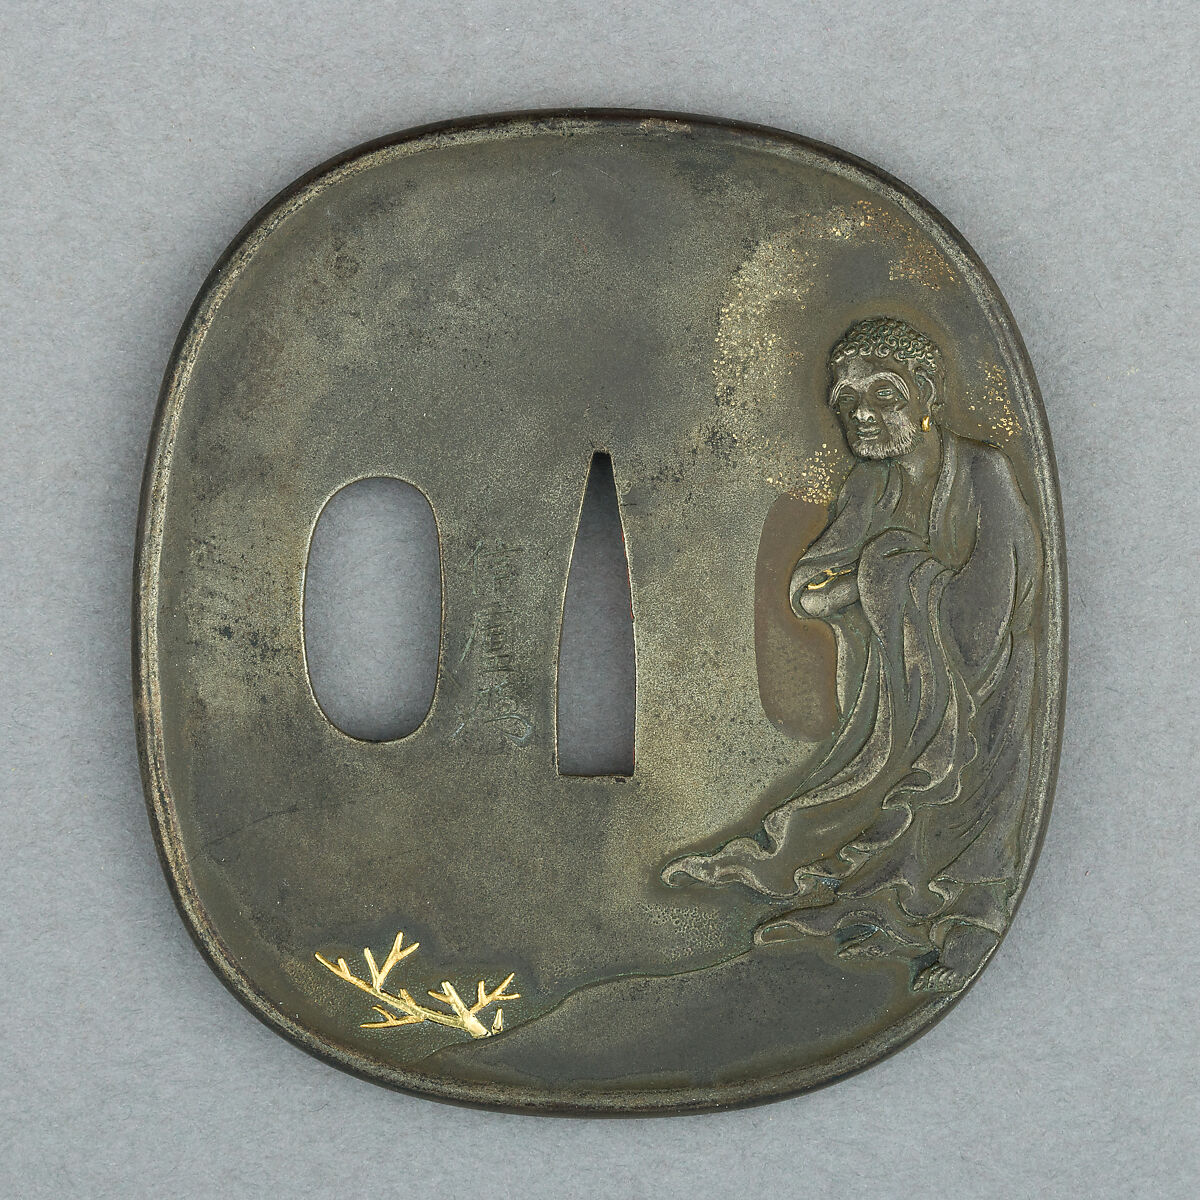 Sword Guard (Tsuba), Copper-silver alloy (shibuichi), gold, Japanese 